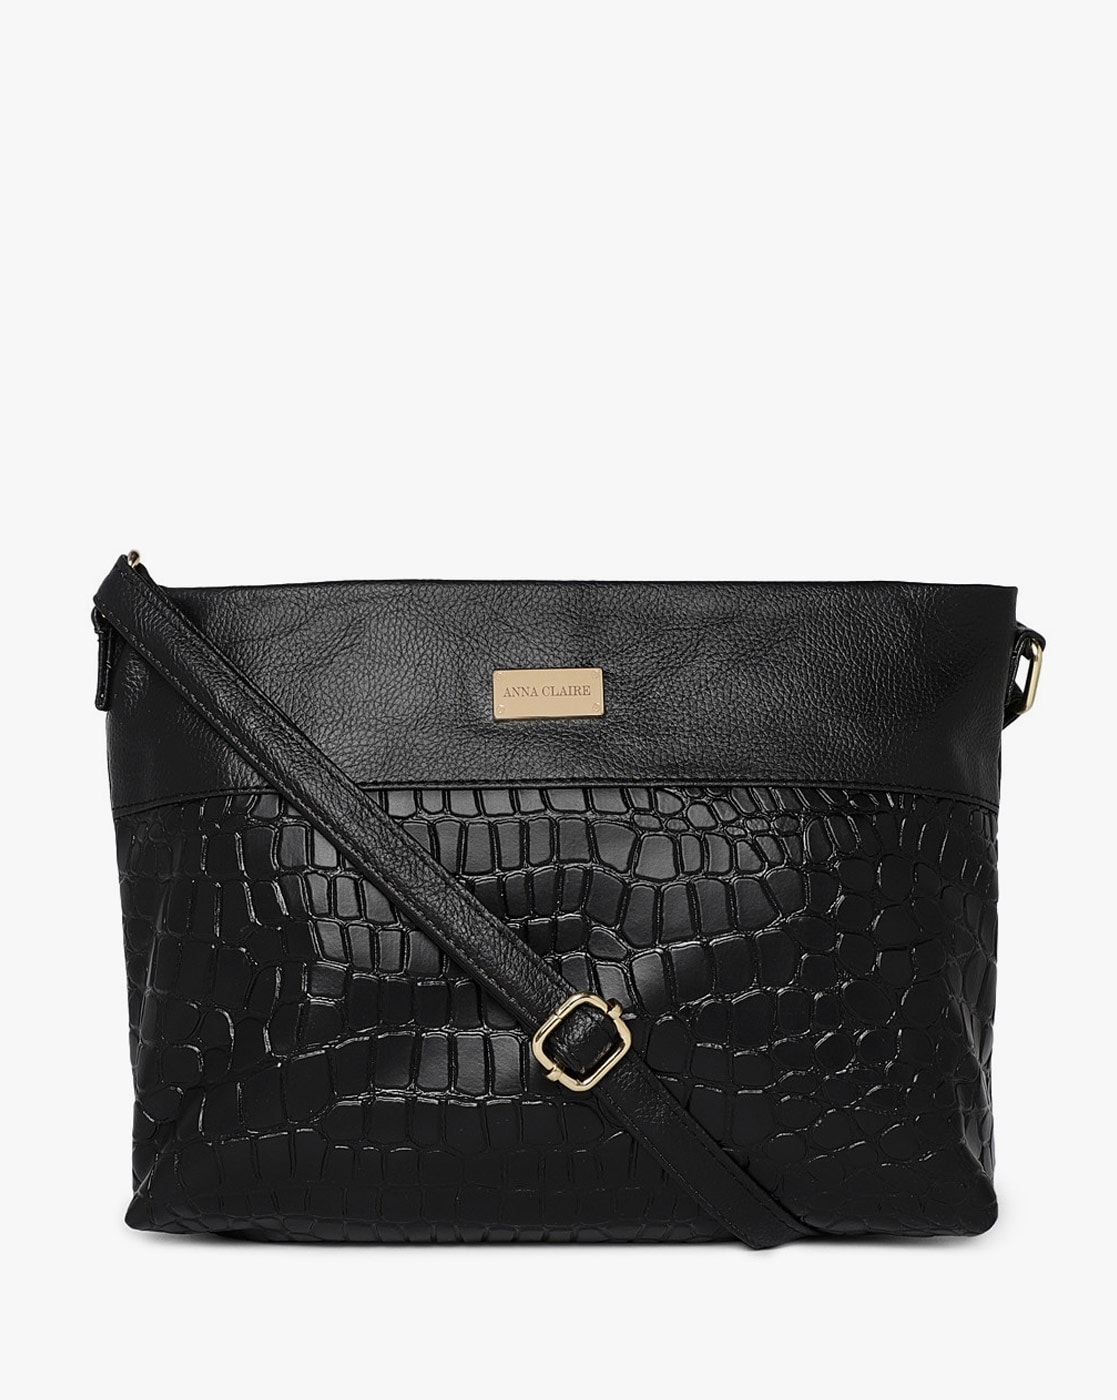 Heart-shaped shoulder bag - Black/Crocodile-patterned - Ladies | H&M IN